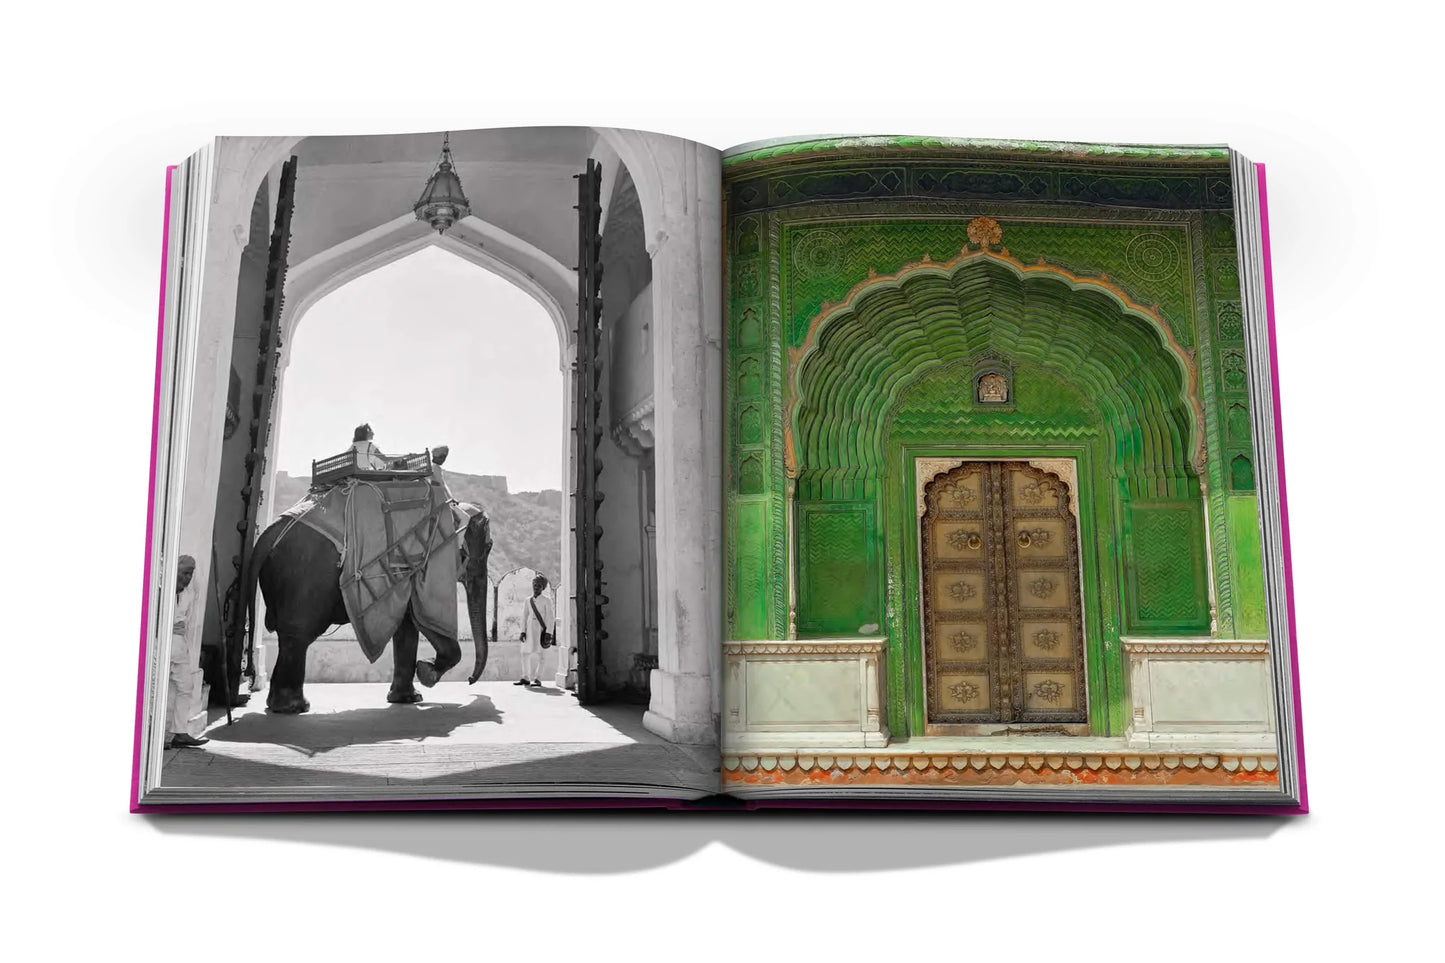 Livre Jaipur Splendor | Assouline